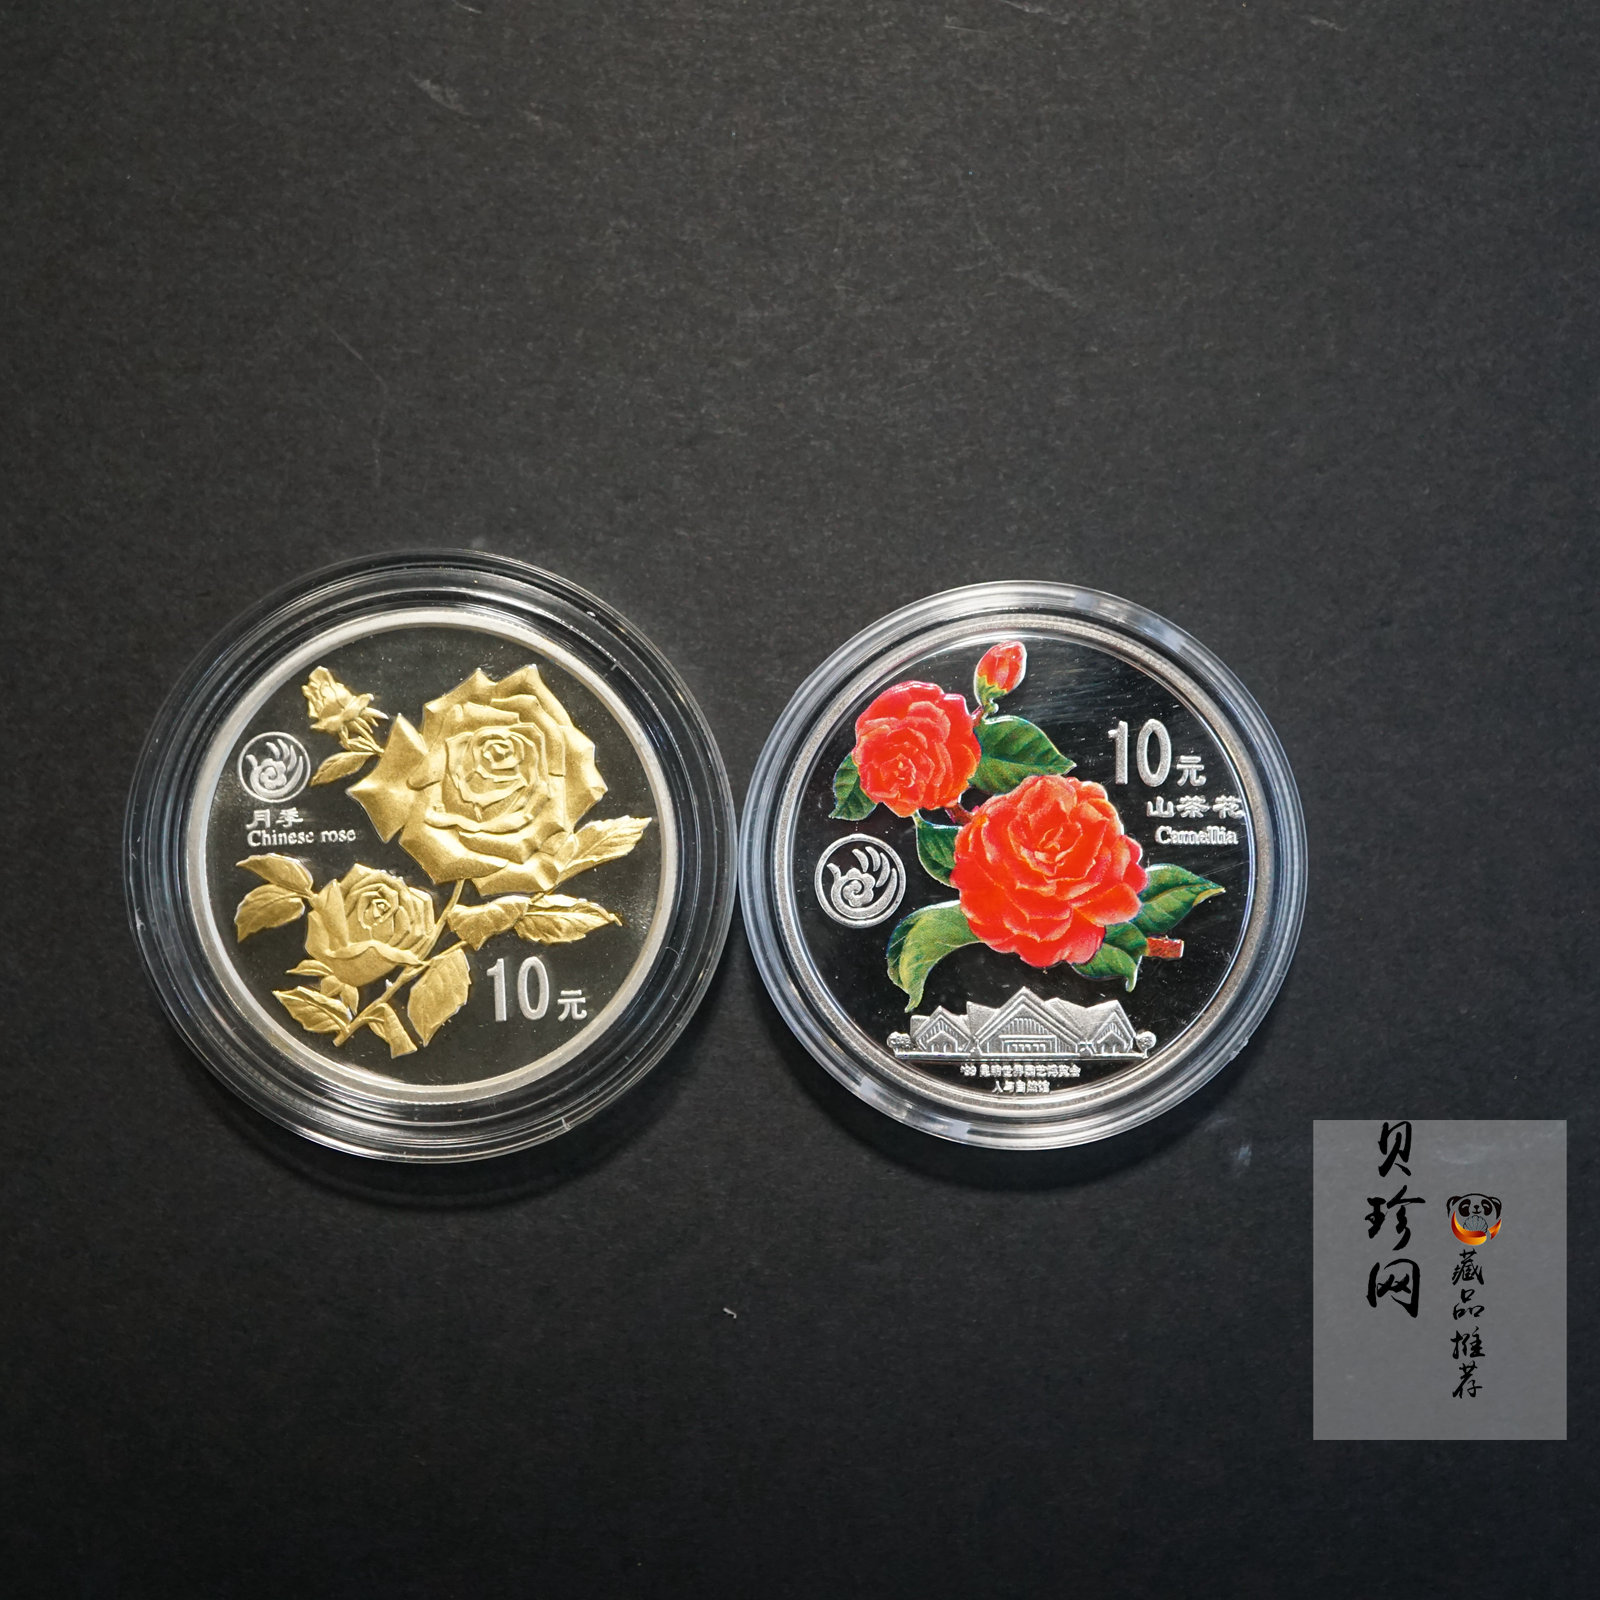 【999681】1999年昆明世界园艺博览会1盎司银币二枚